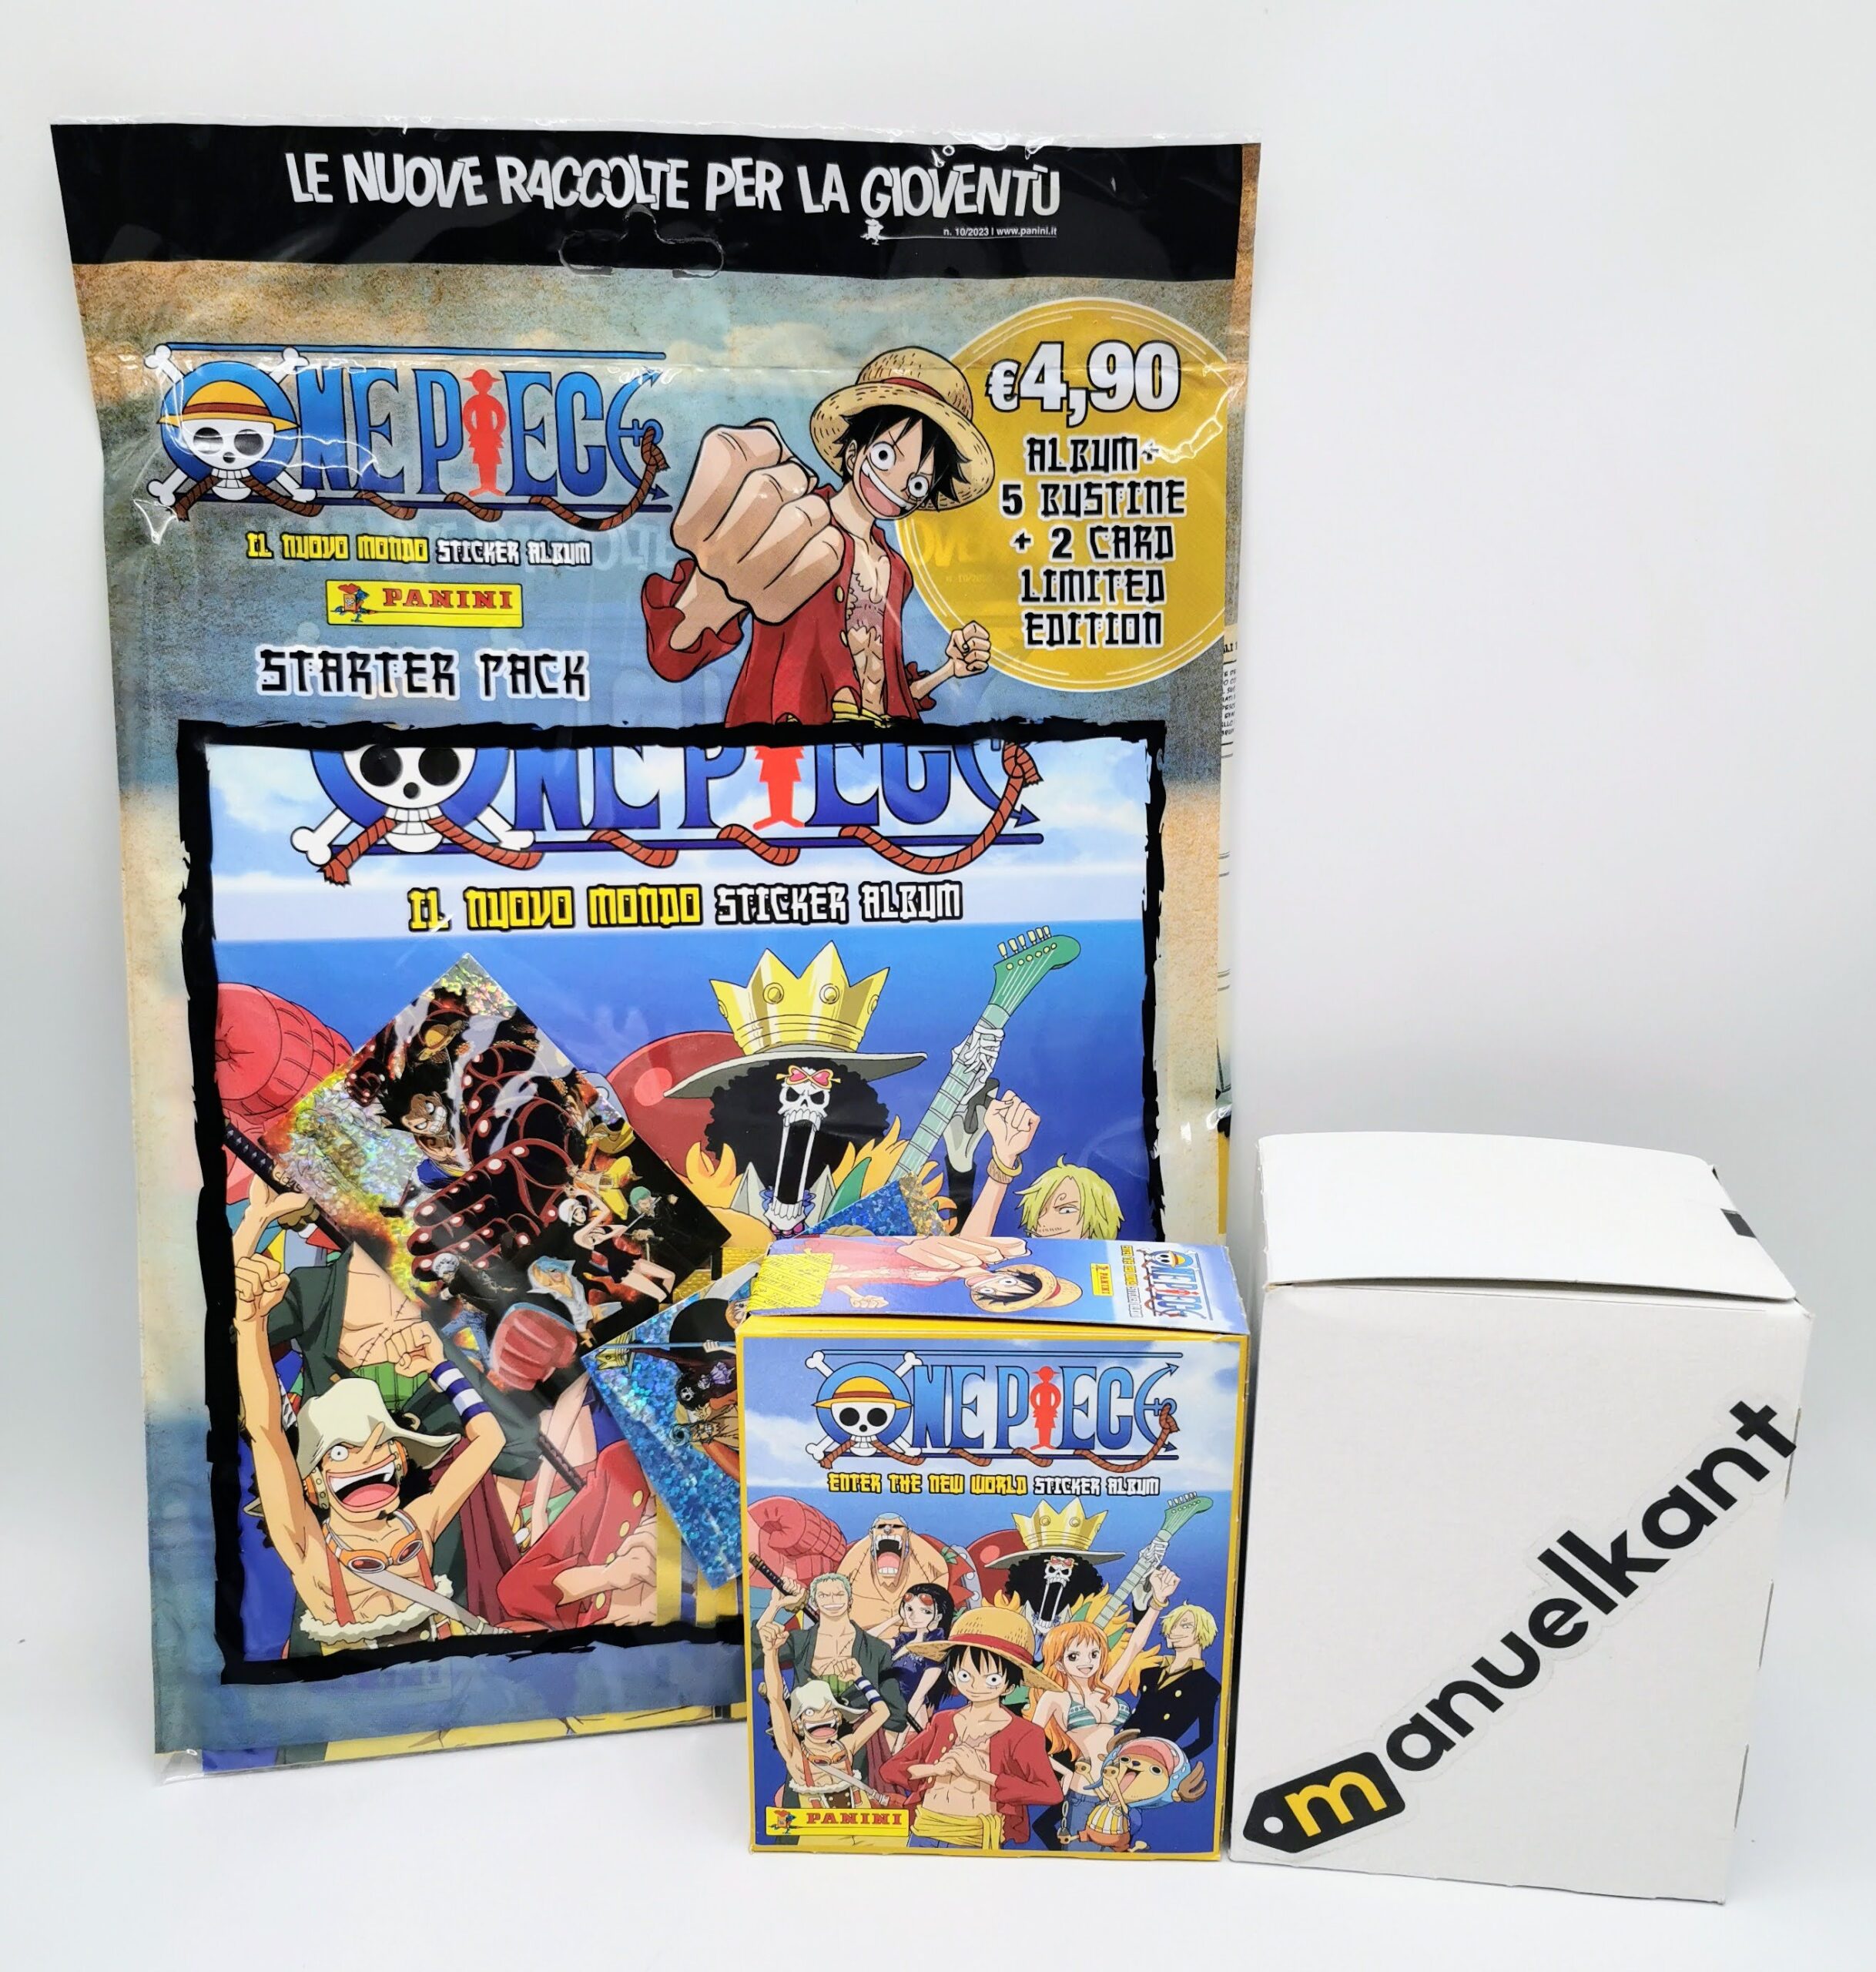 One Piece Il Nuovo Mondo Sticker Album